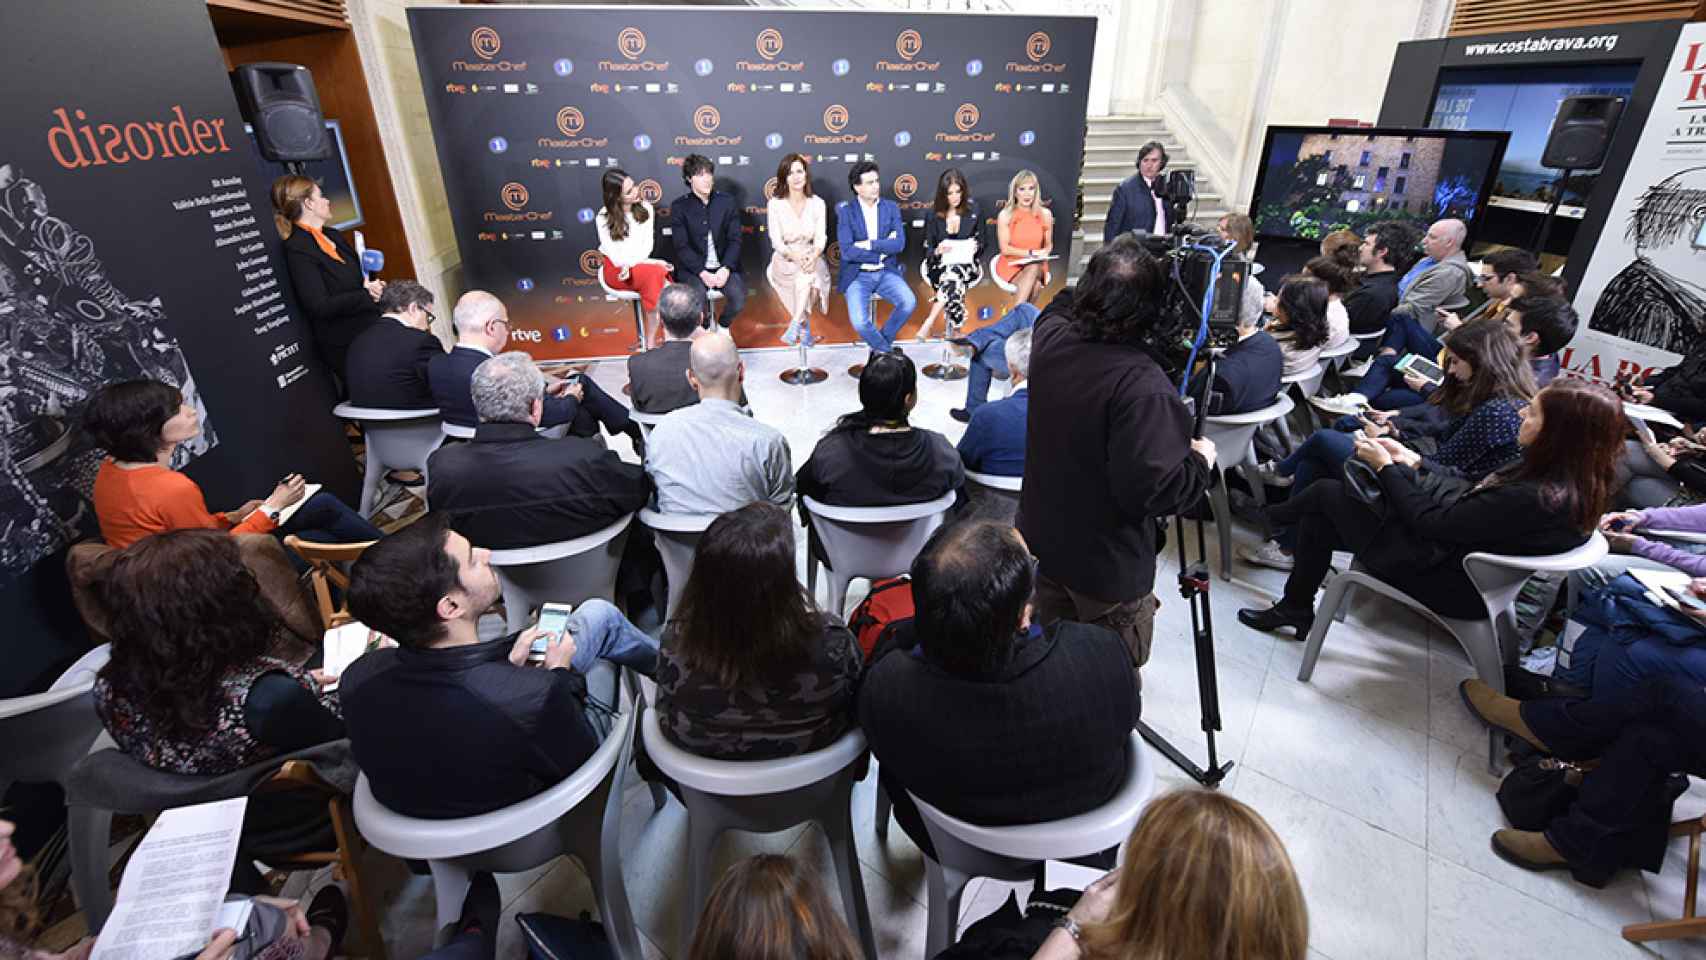 RTVE se acerca a Catalunya para fomentar su producción y estrechar relaciones